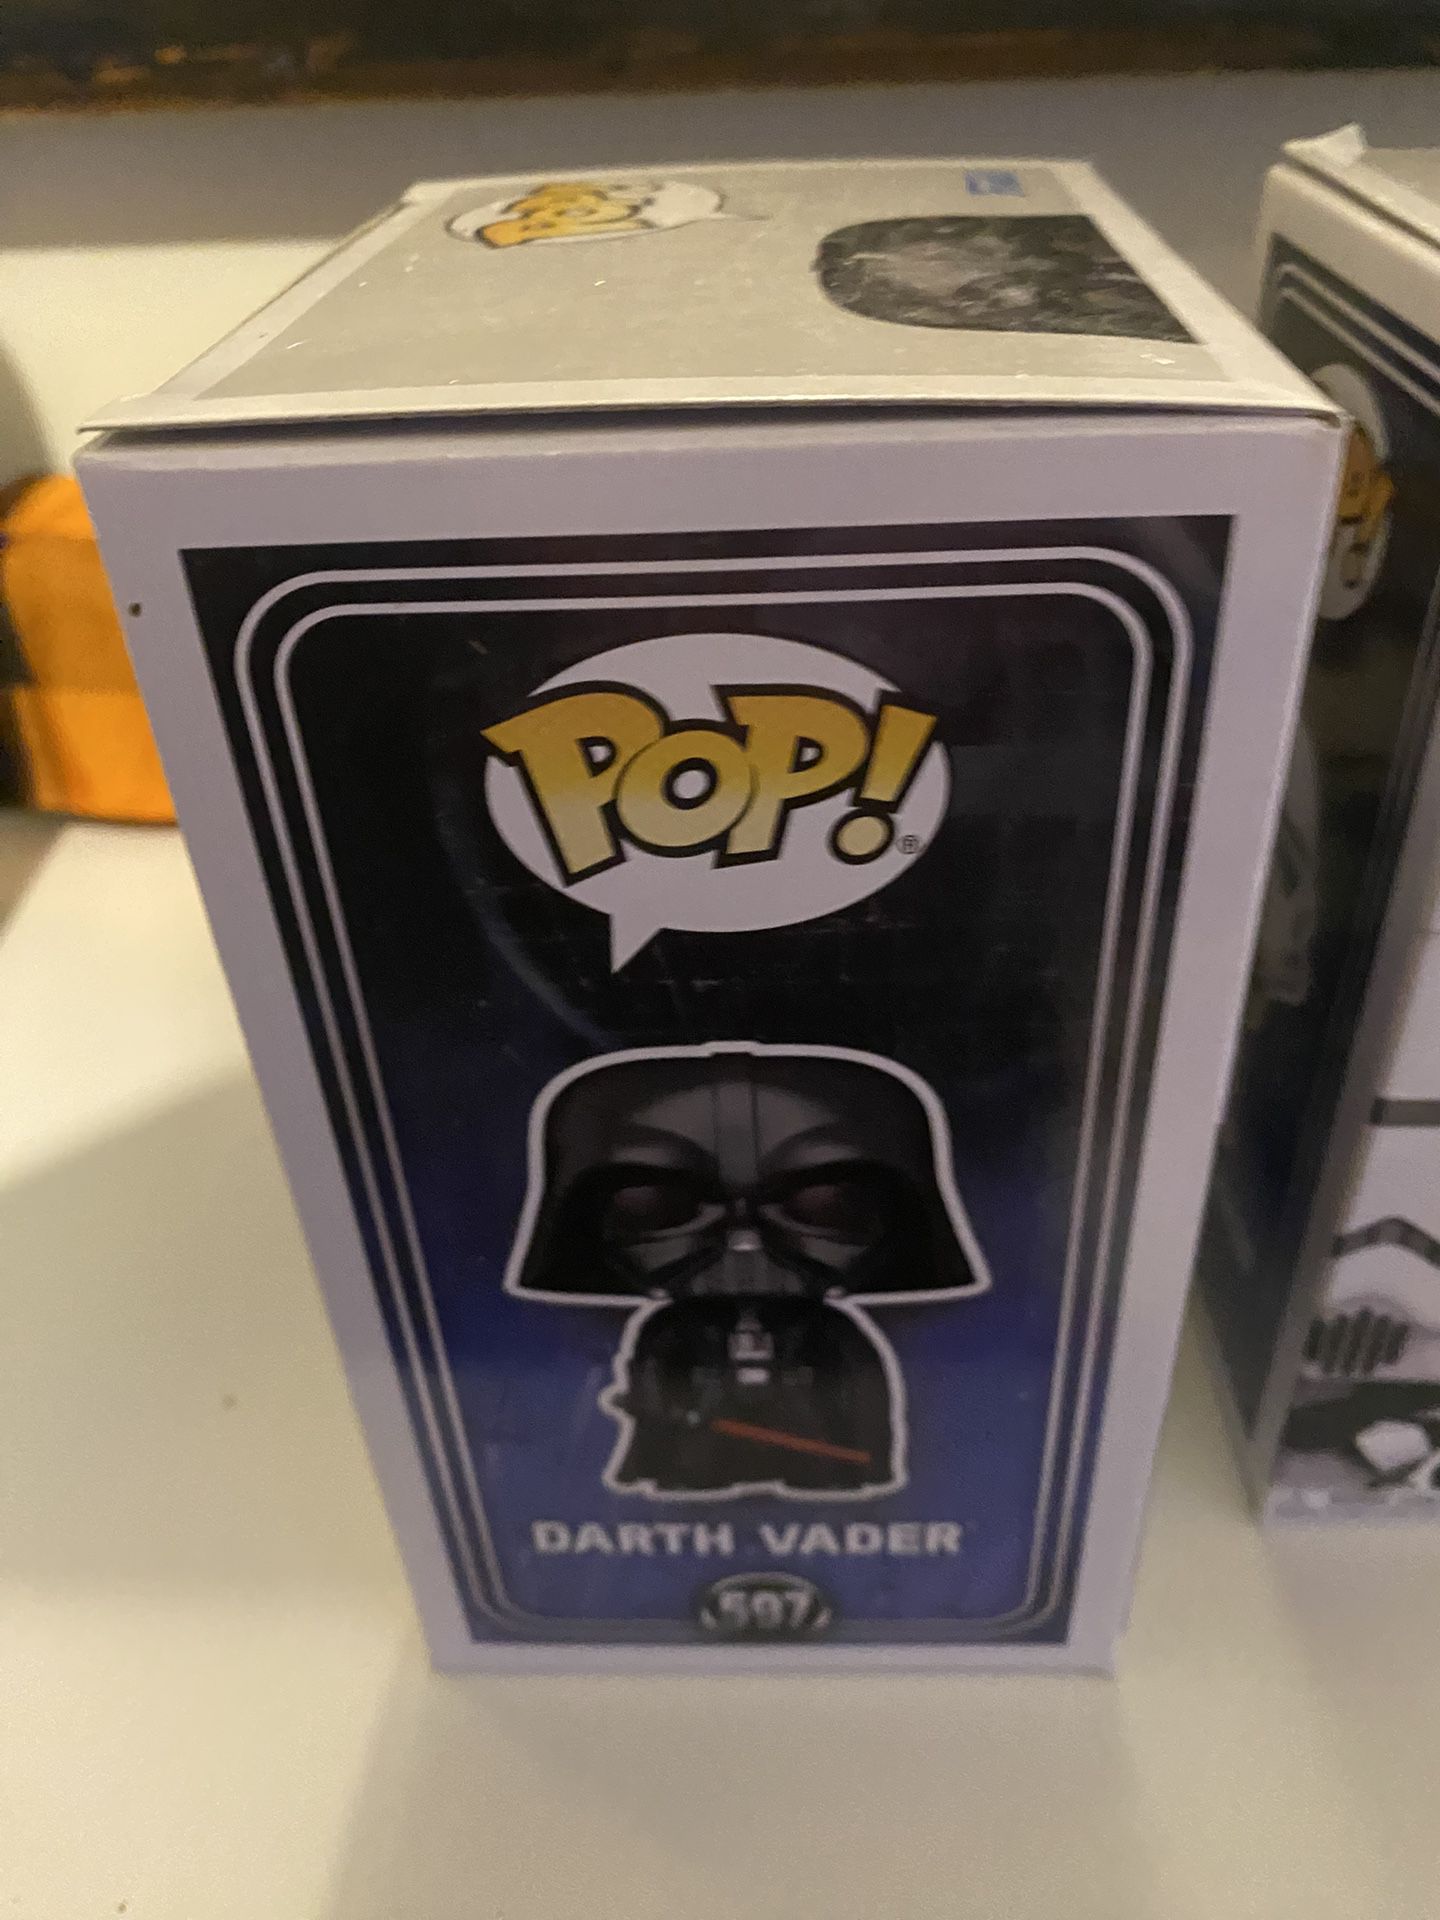 Dearth Vader Funko 597